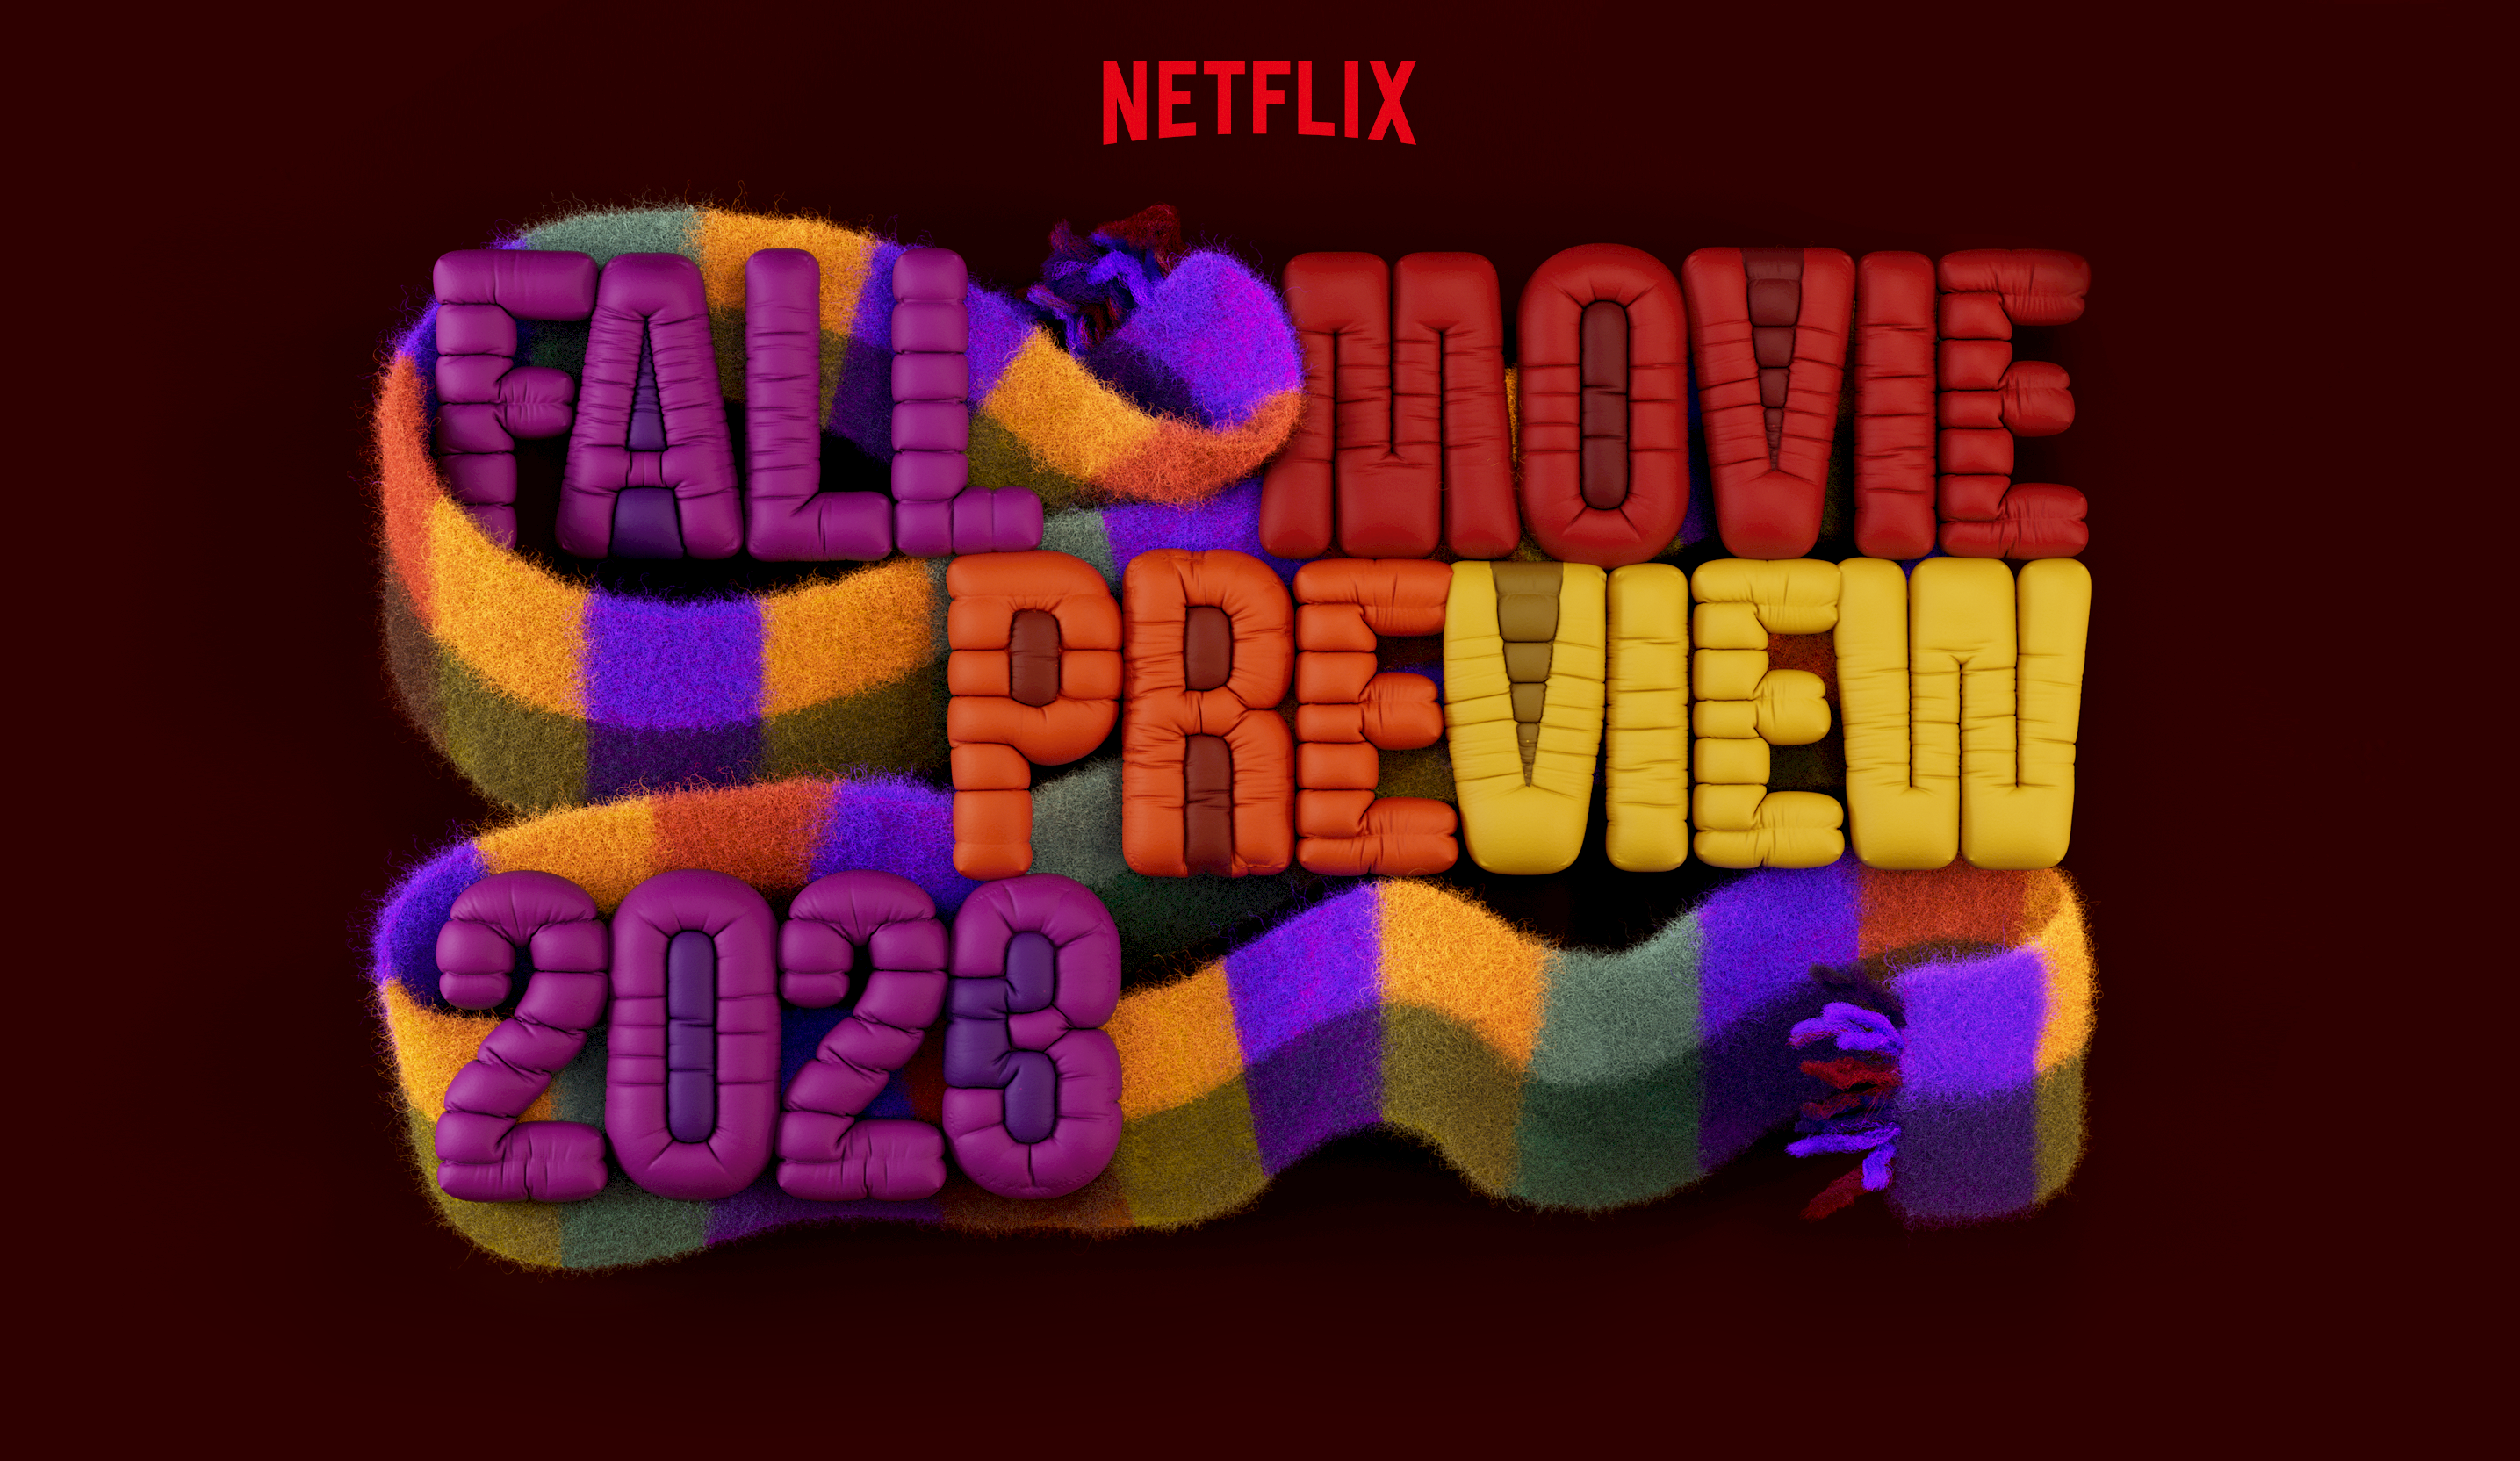 Lançamentos da Netflix para agosto de 2023